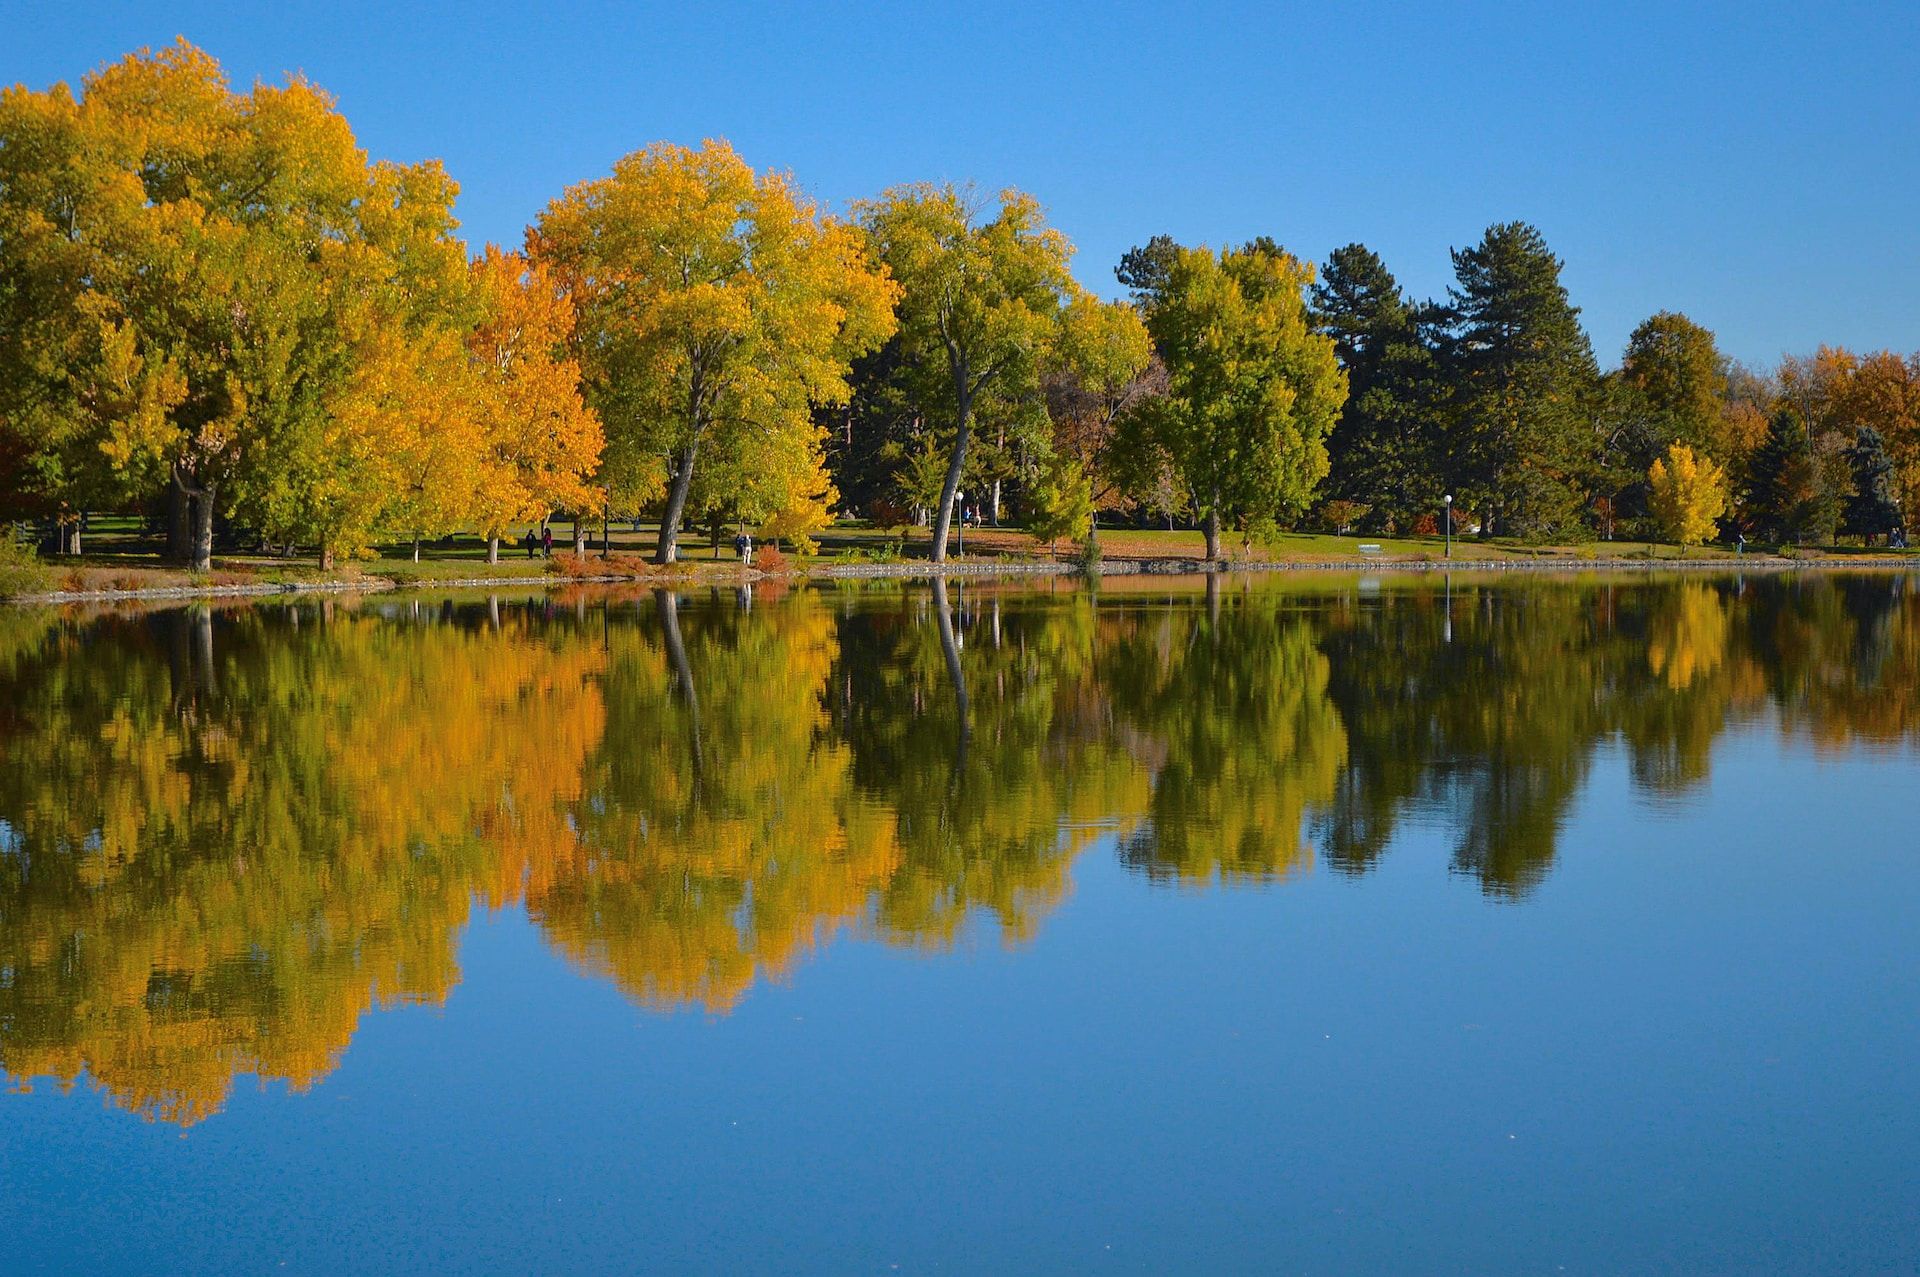 View of Washington Park in Denver, Colorado